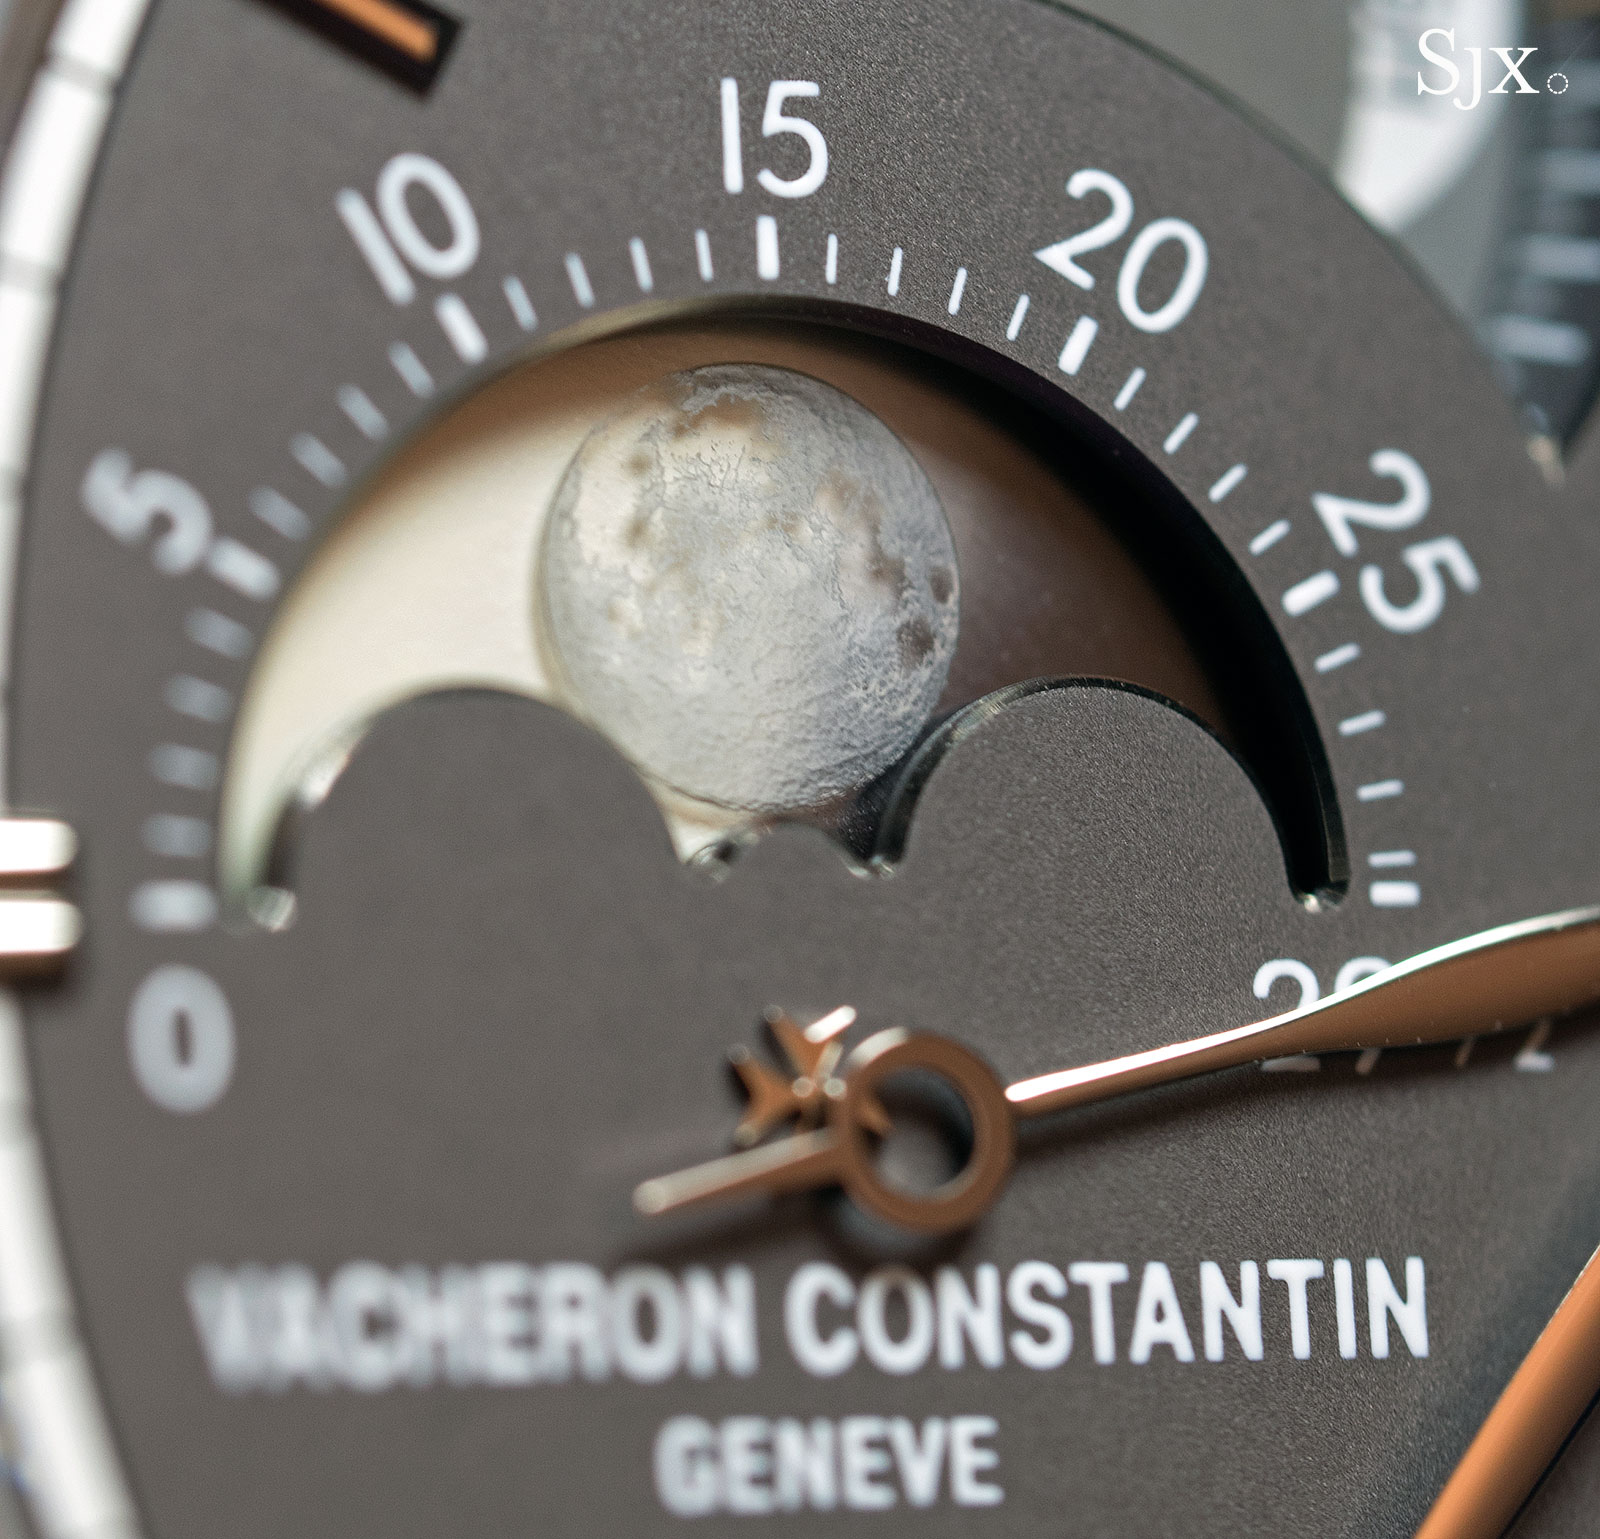 Vacheron Constantin Celestia Astronomical Grand Complication 11